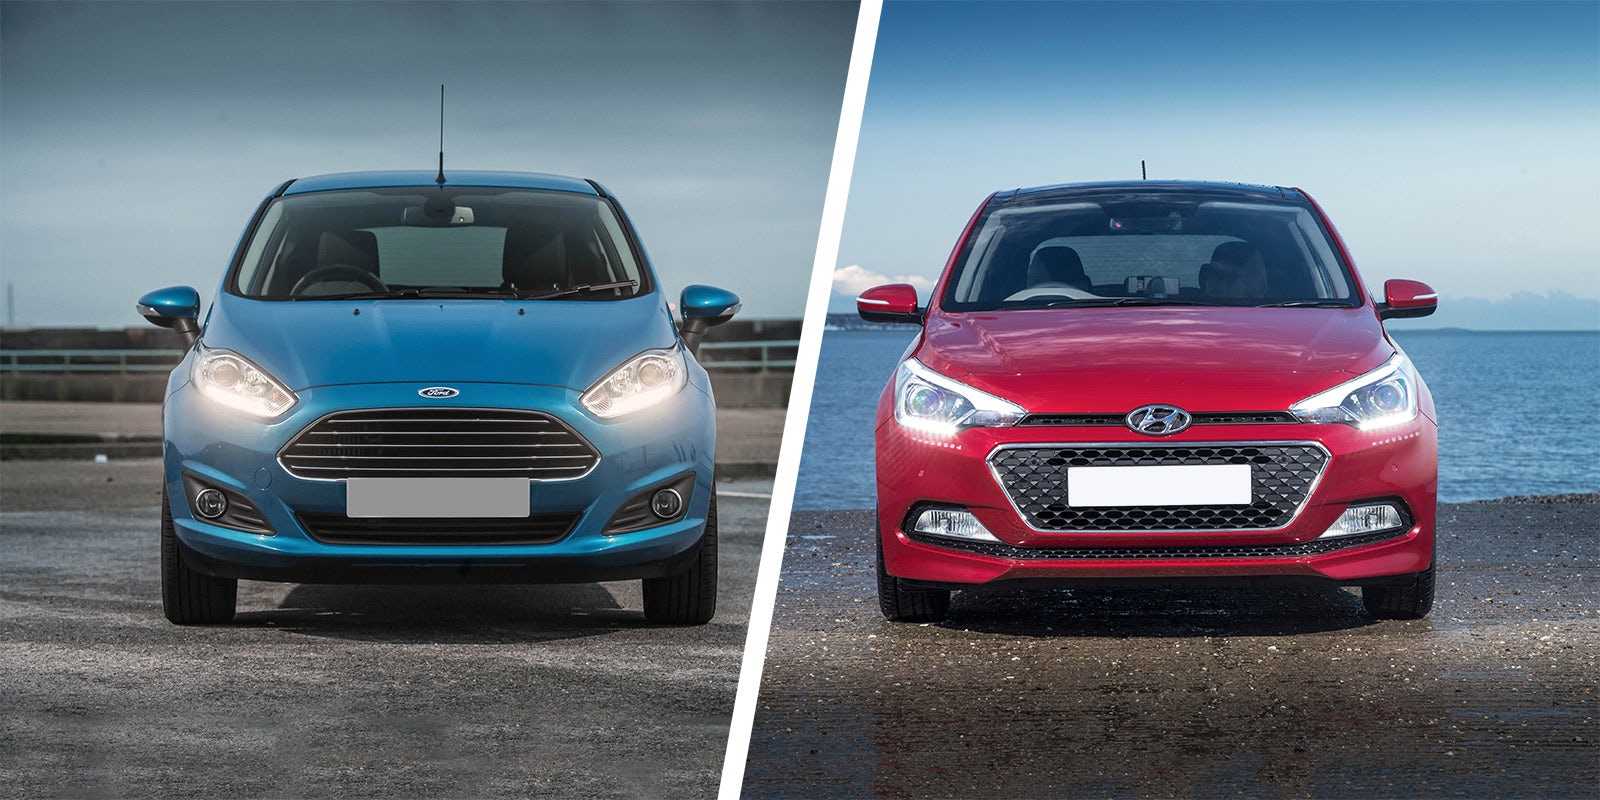 Ford Fiesta vs Hyundai i20 comparison